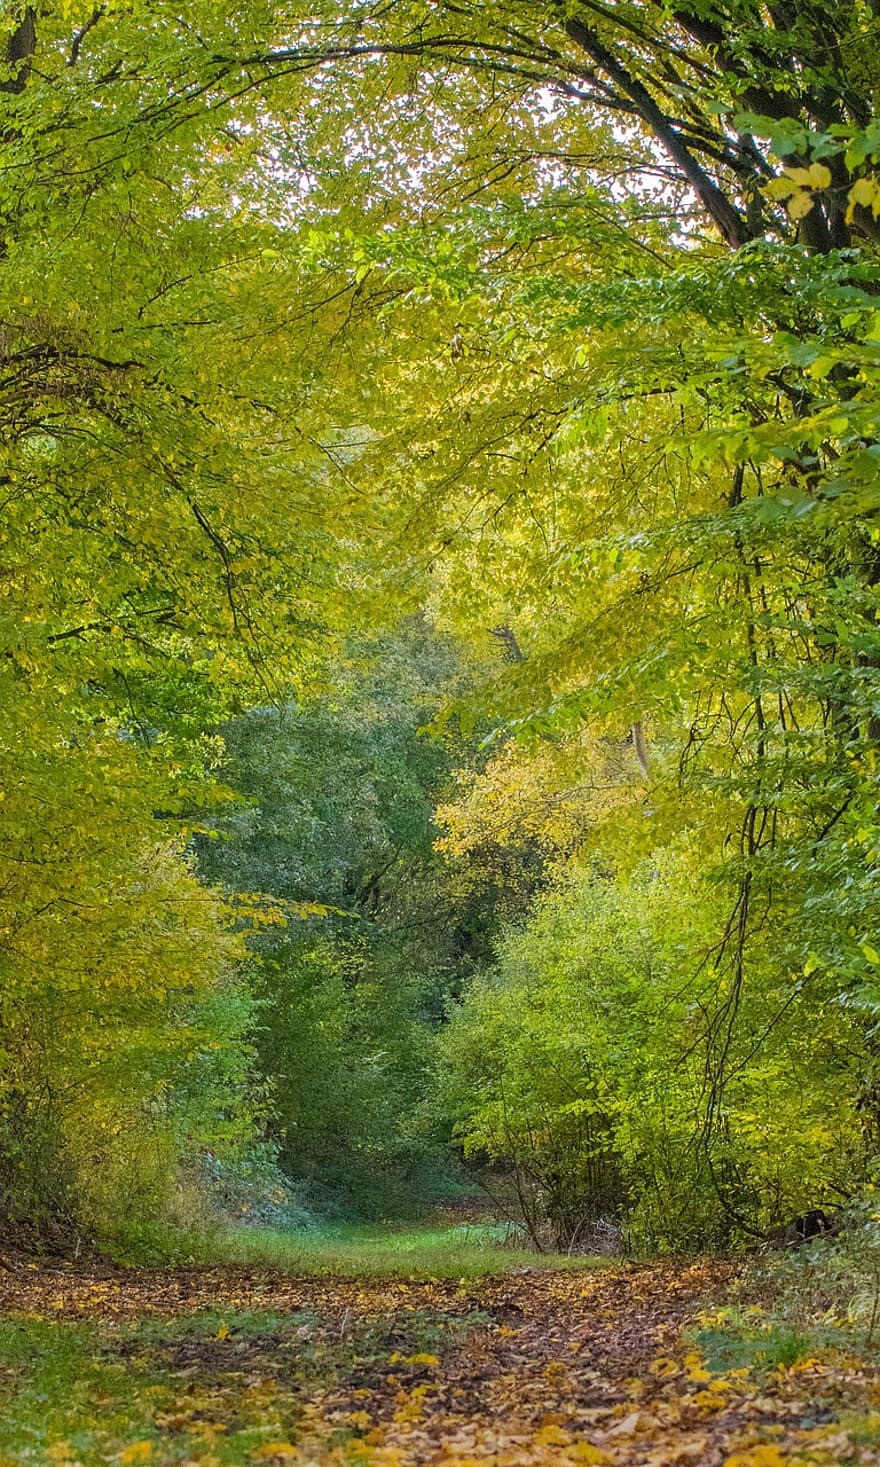 เส้นทาง, ต้นไม้, ป่า, ใบไม้, ทางเดิน, ธรรมชาติ, ฤดูใบไม้ร่วง